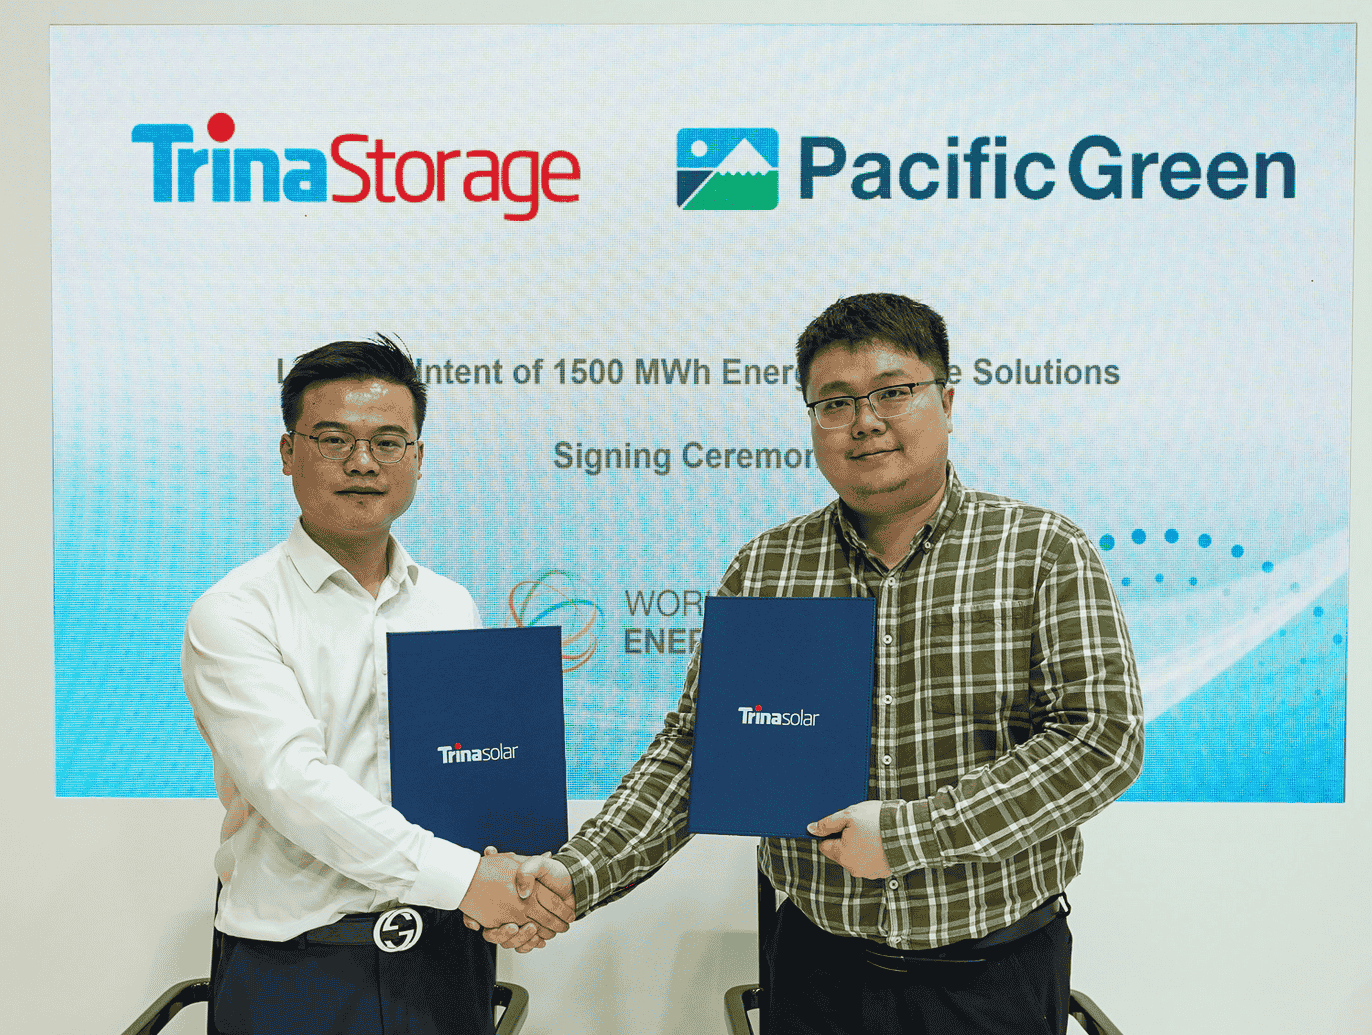 Trina Storage und Pacific Green: Unterzeichnen Absichtserklärung für Energiespeichersysteme mit 1500 MWh Gesamtkapazität